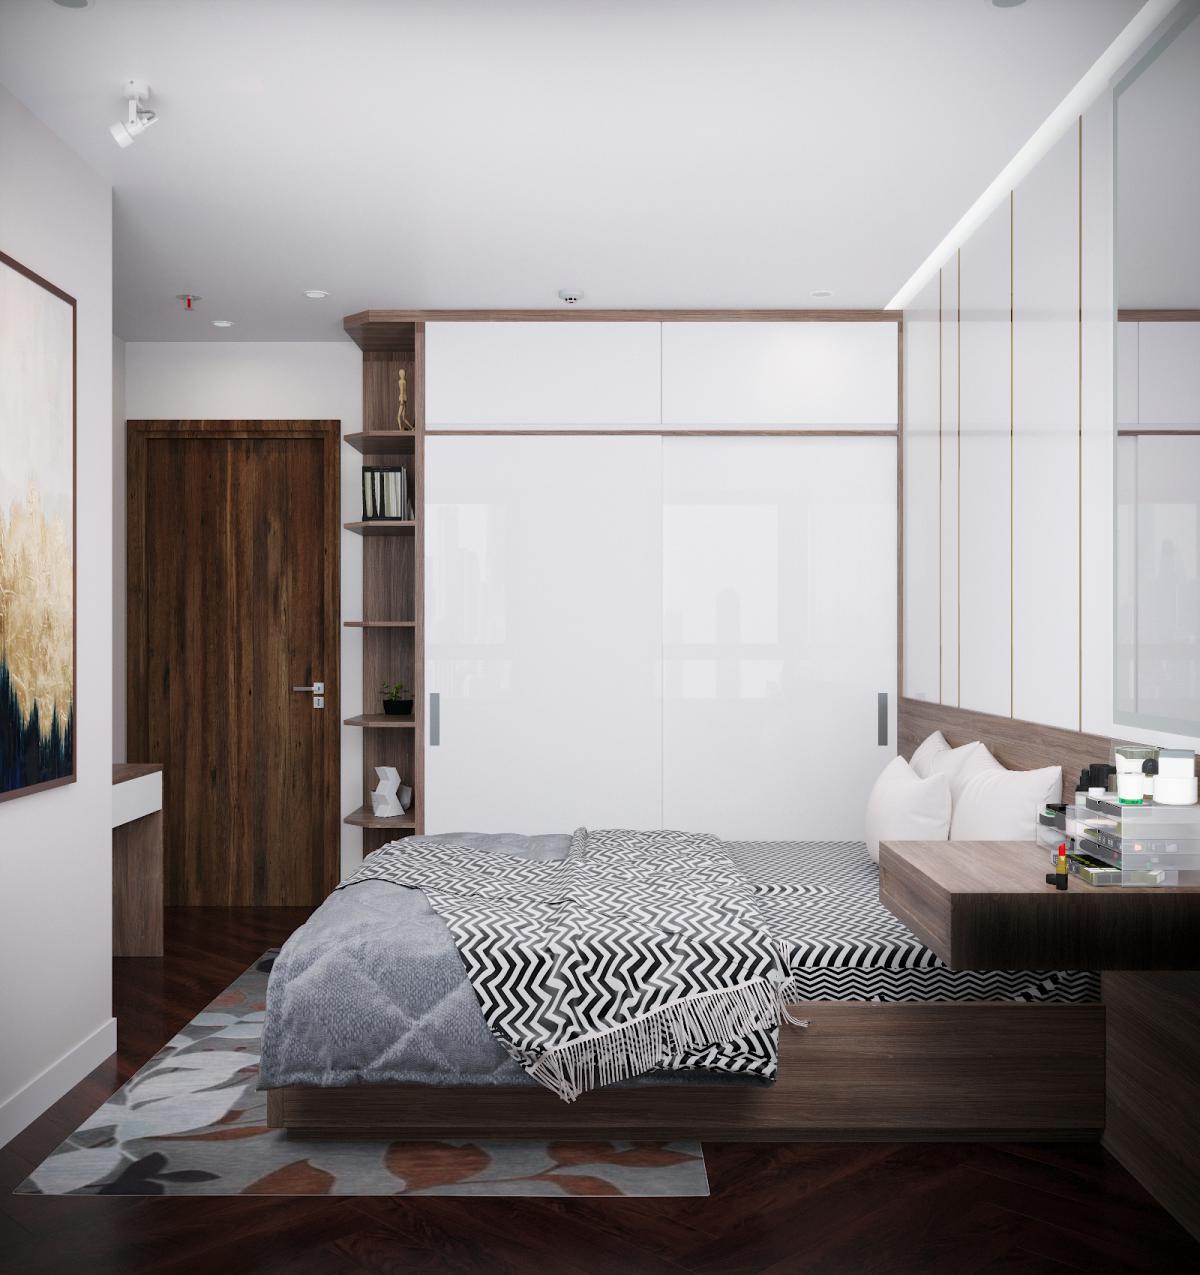  Thiết kế nội thất chung cư HH Linh Đàm 